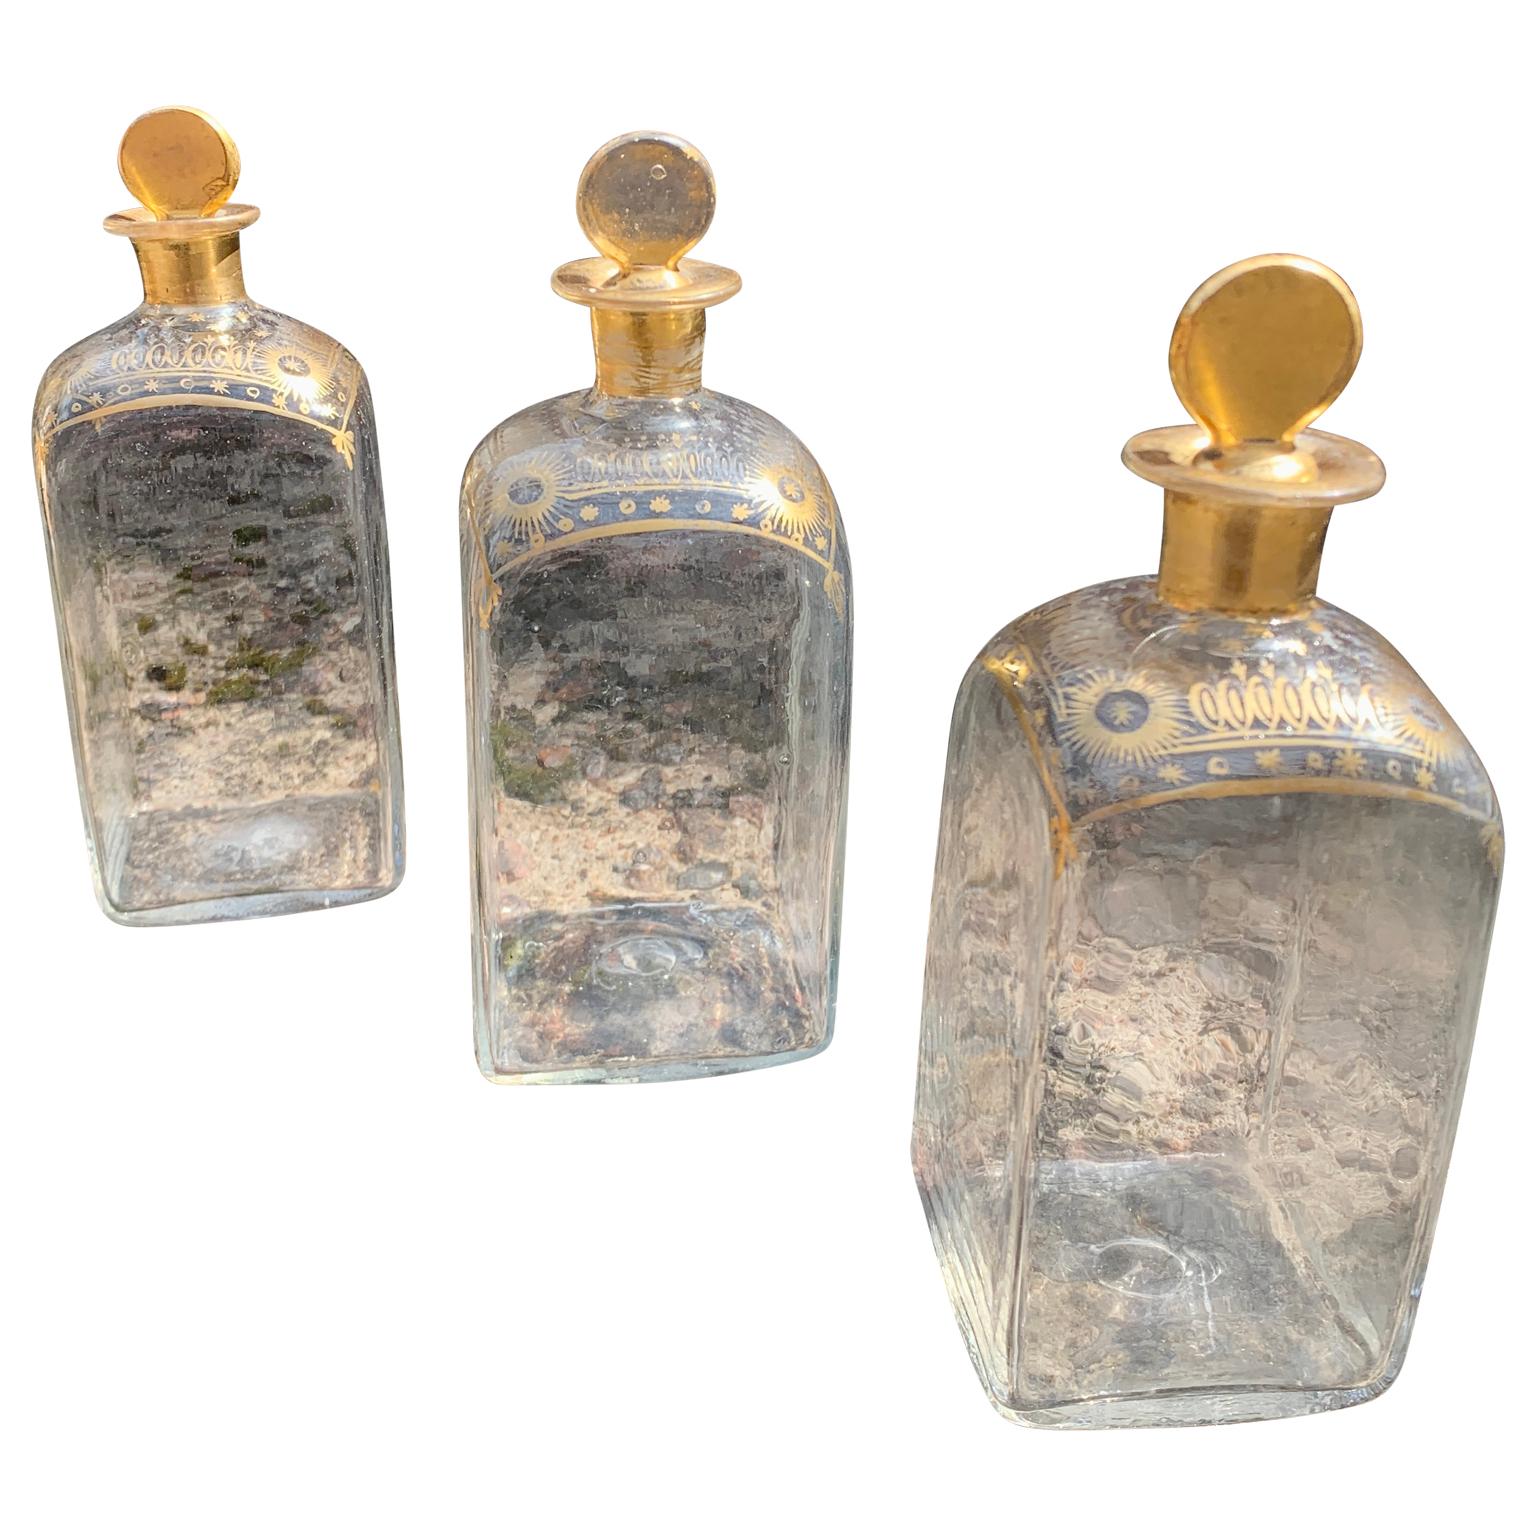 Ein Satz von drei französischen handgefertigten (mundgeblasenen) Spirituosendekantern oder -flaschen mit den originalen Glaskorken. Diese französischen transparenten Gläser und antiken Stücke aus der ersten Hälfte des 19. Jahrhunderts sind rundherum